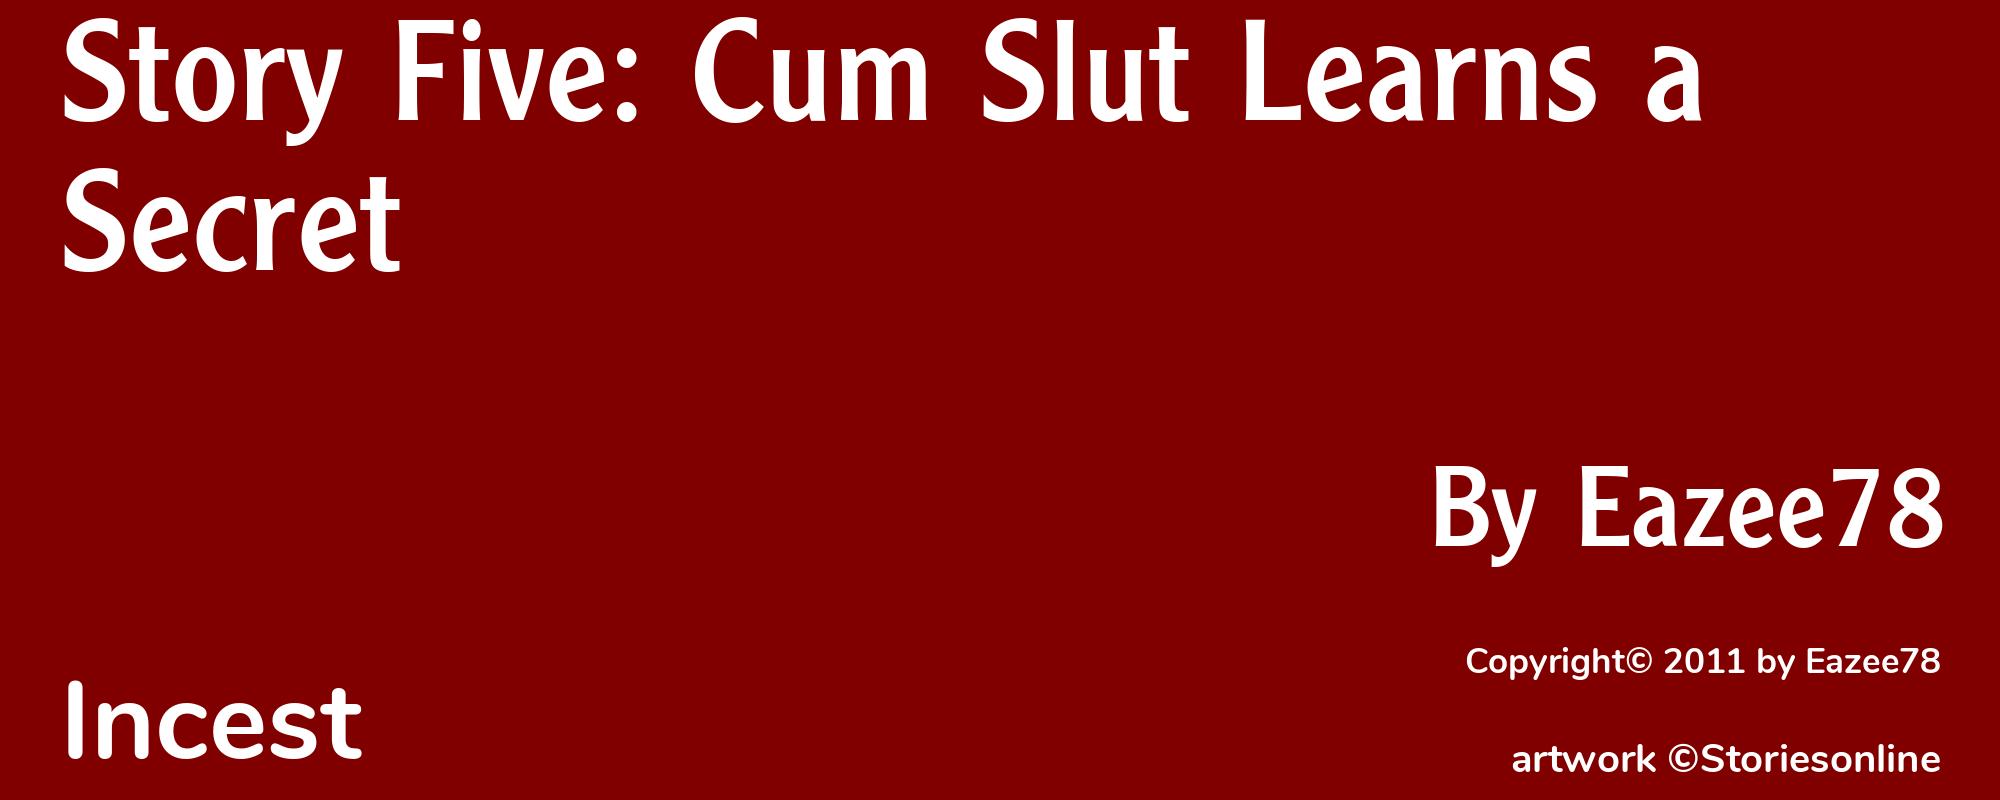 Story Five: Cum Slut Learns a Secret - Cover